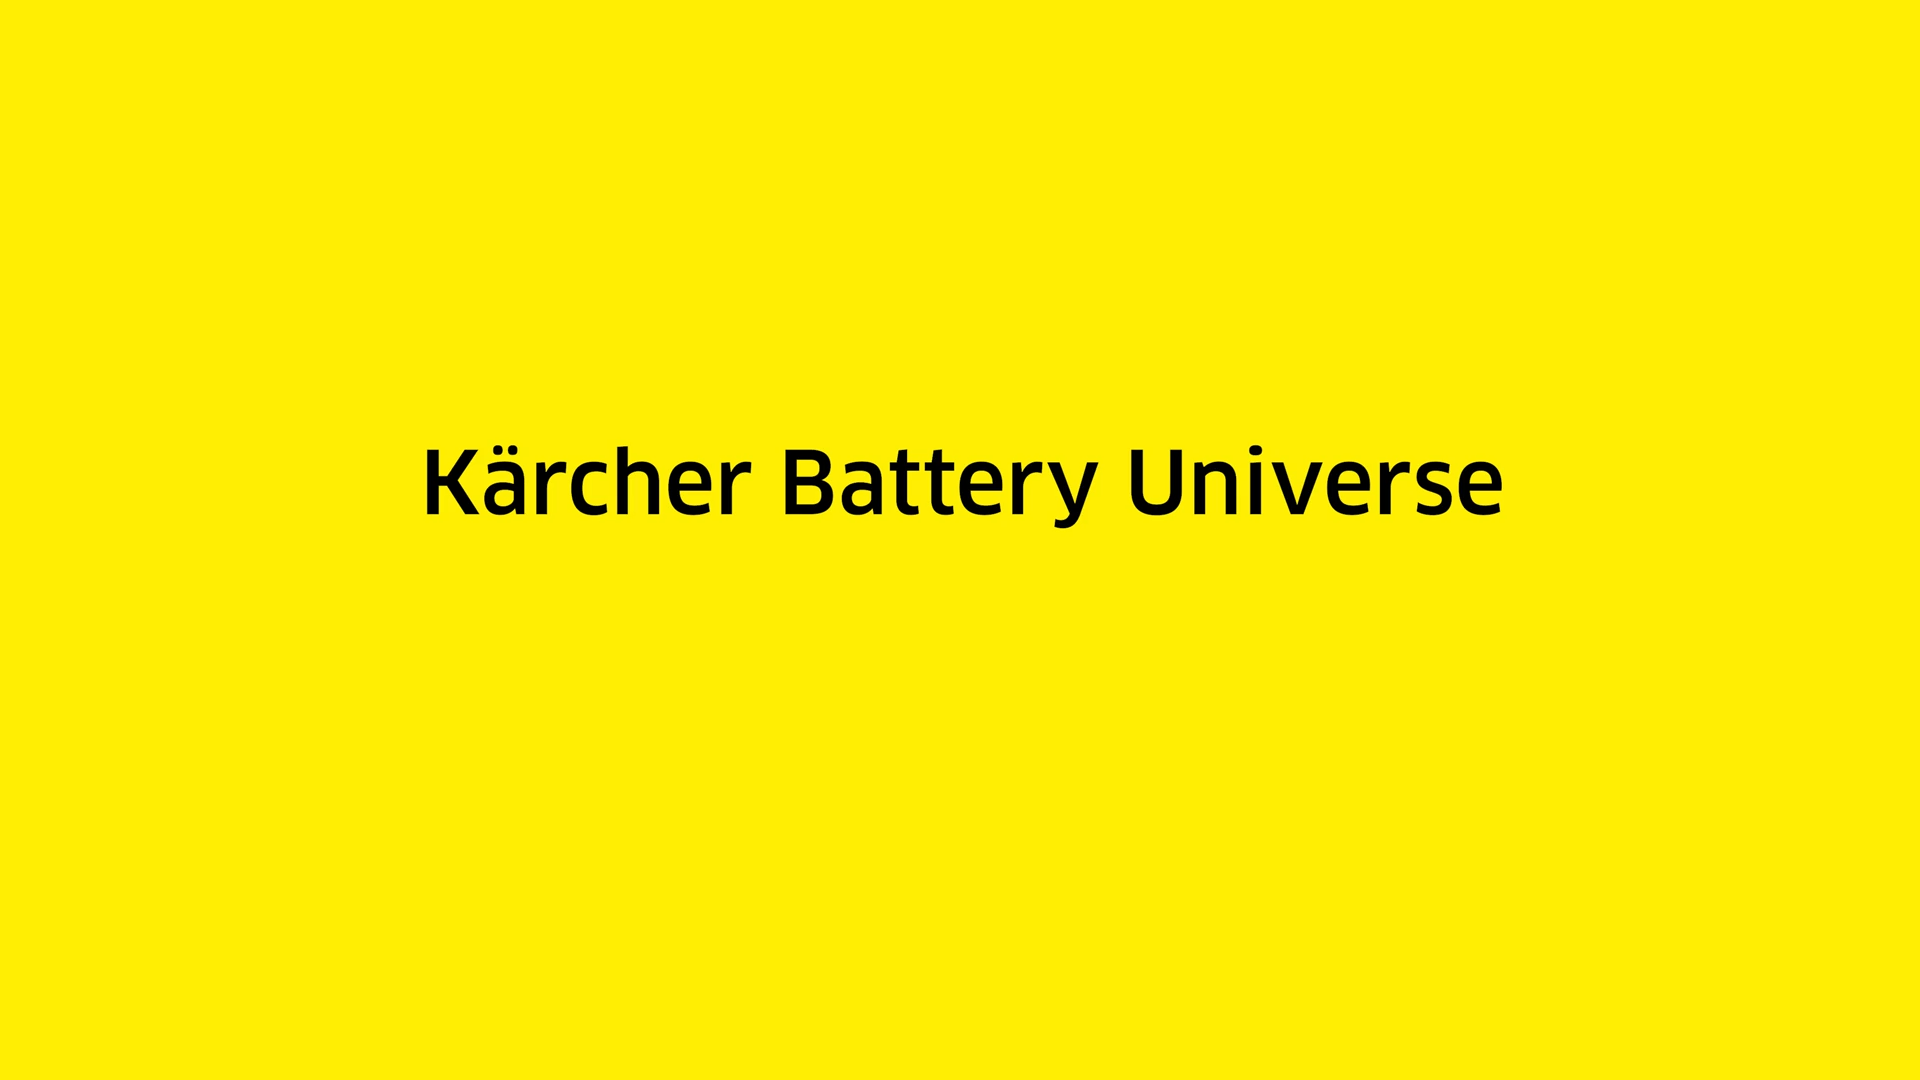 Kaercher Professional Outdoor Power Equipment